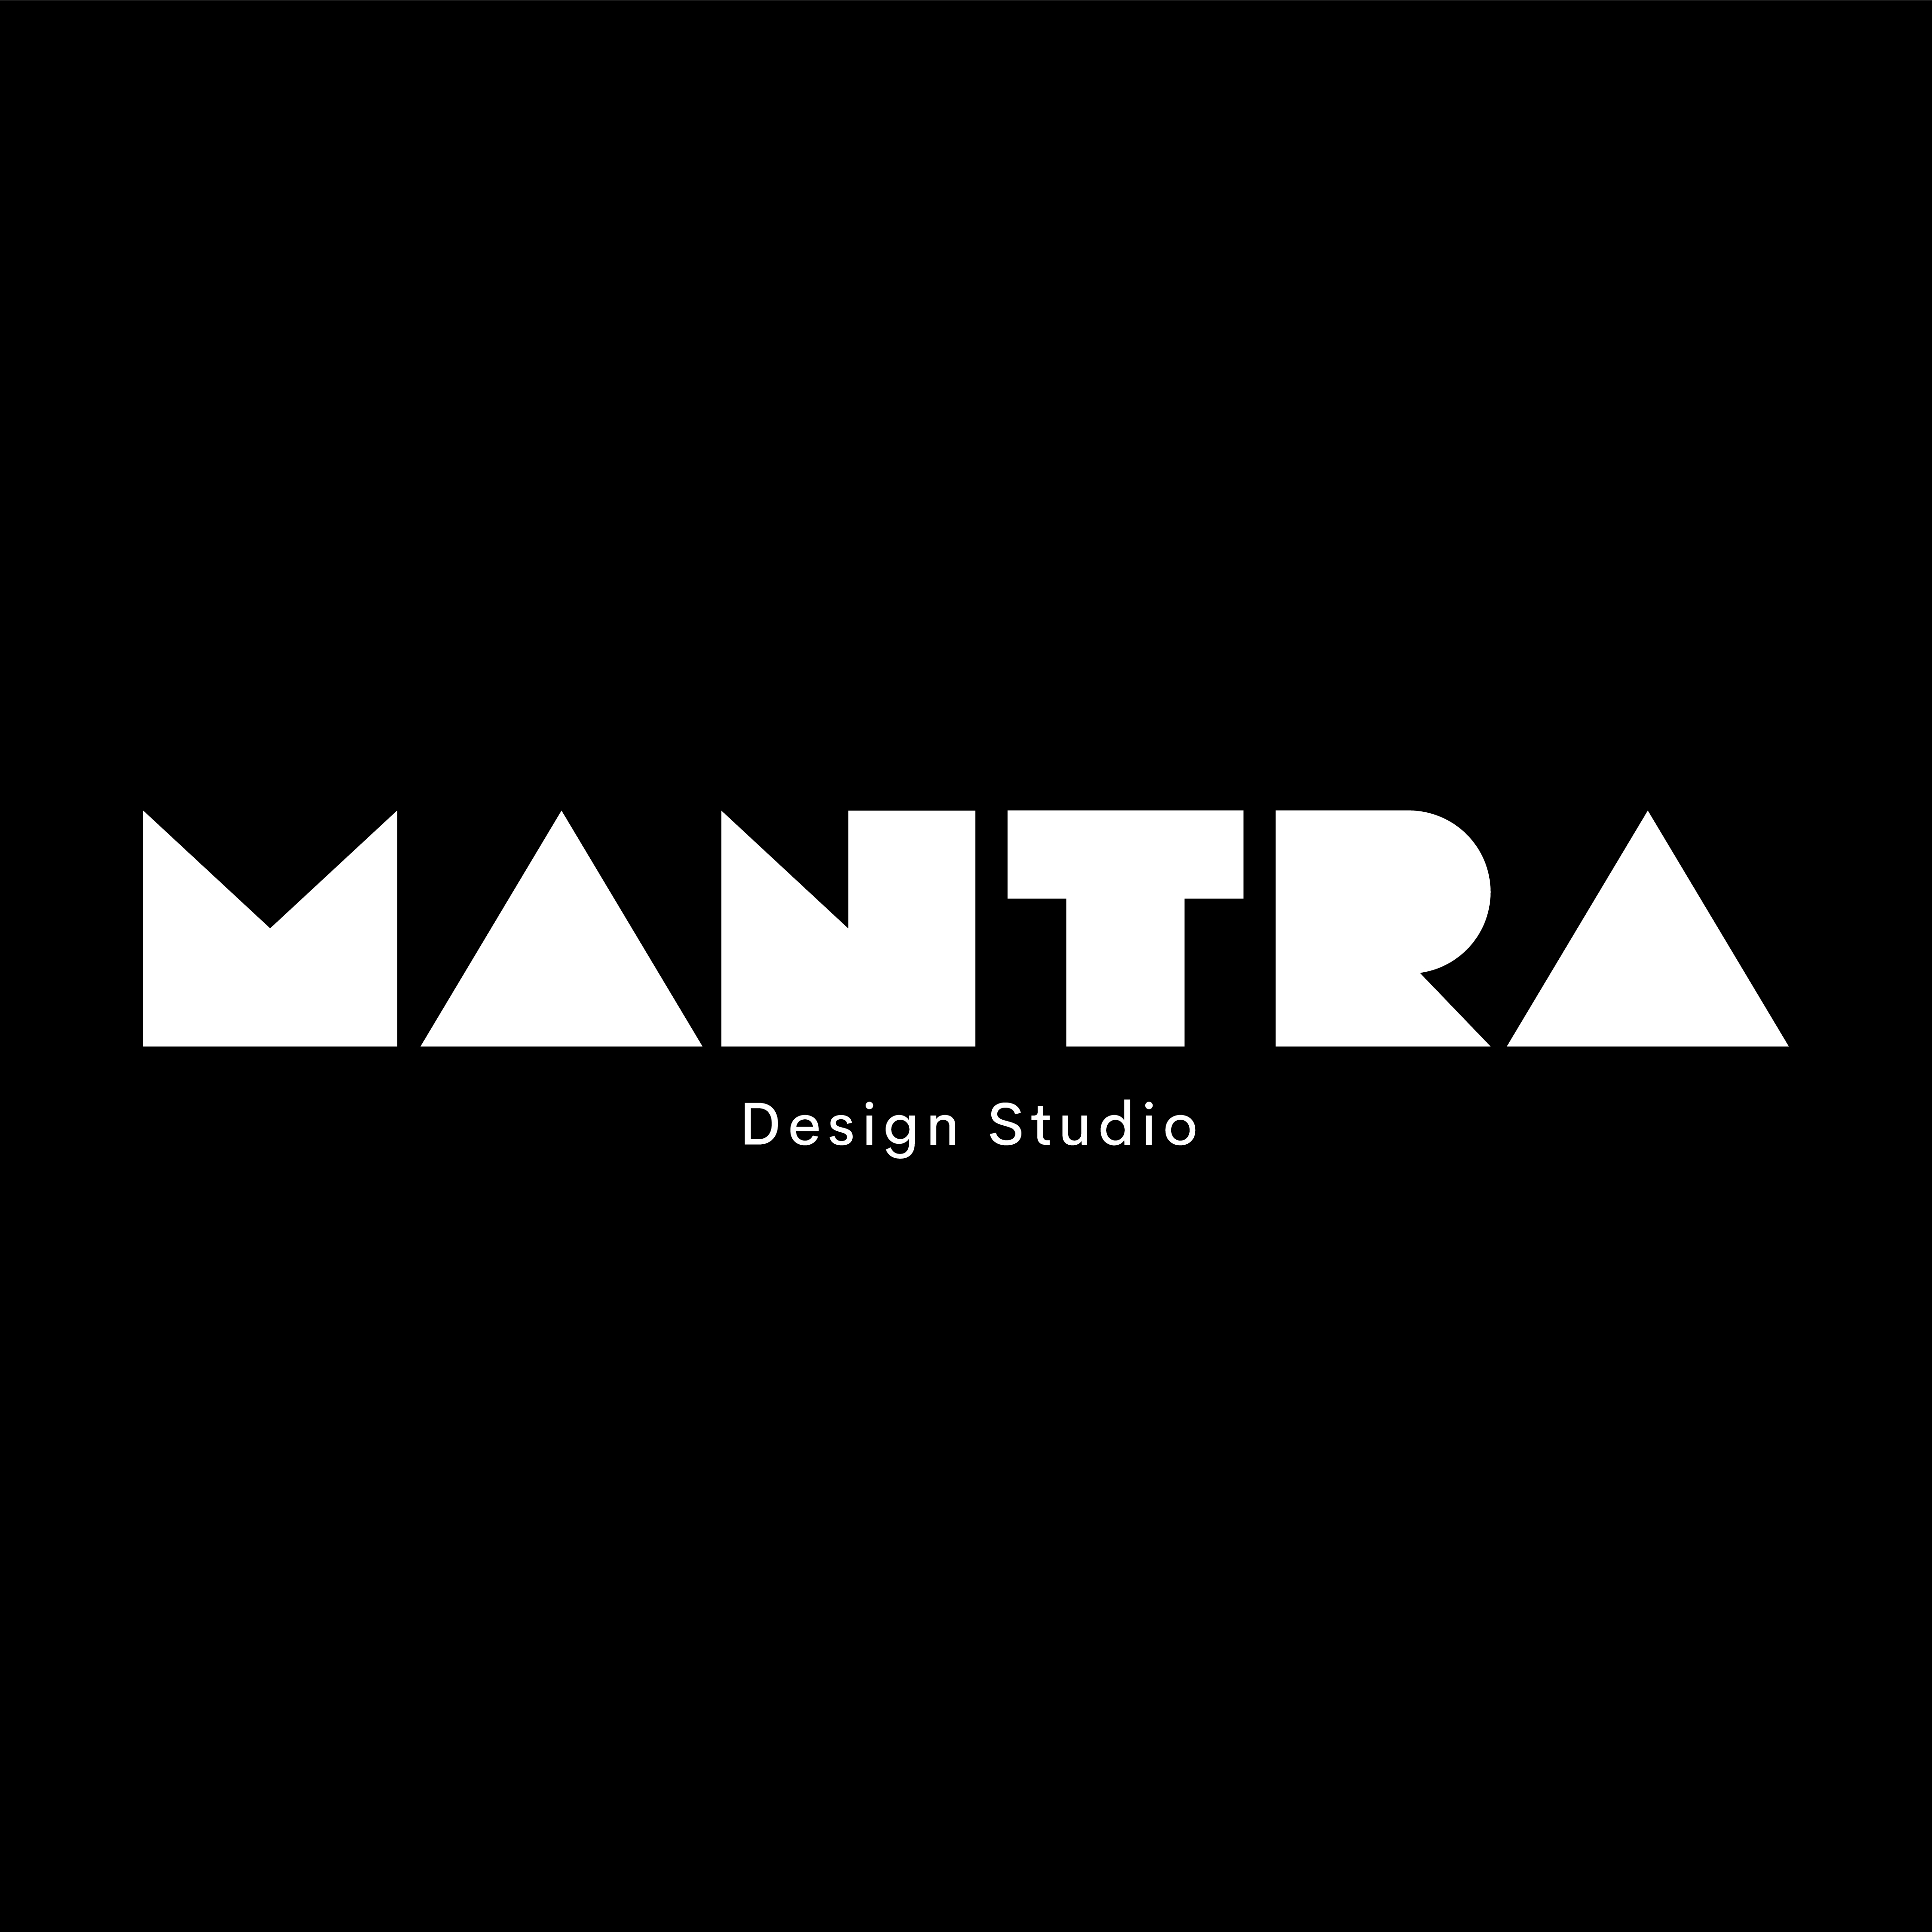 MAMTRA

Design Studio